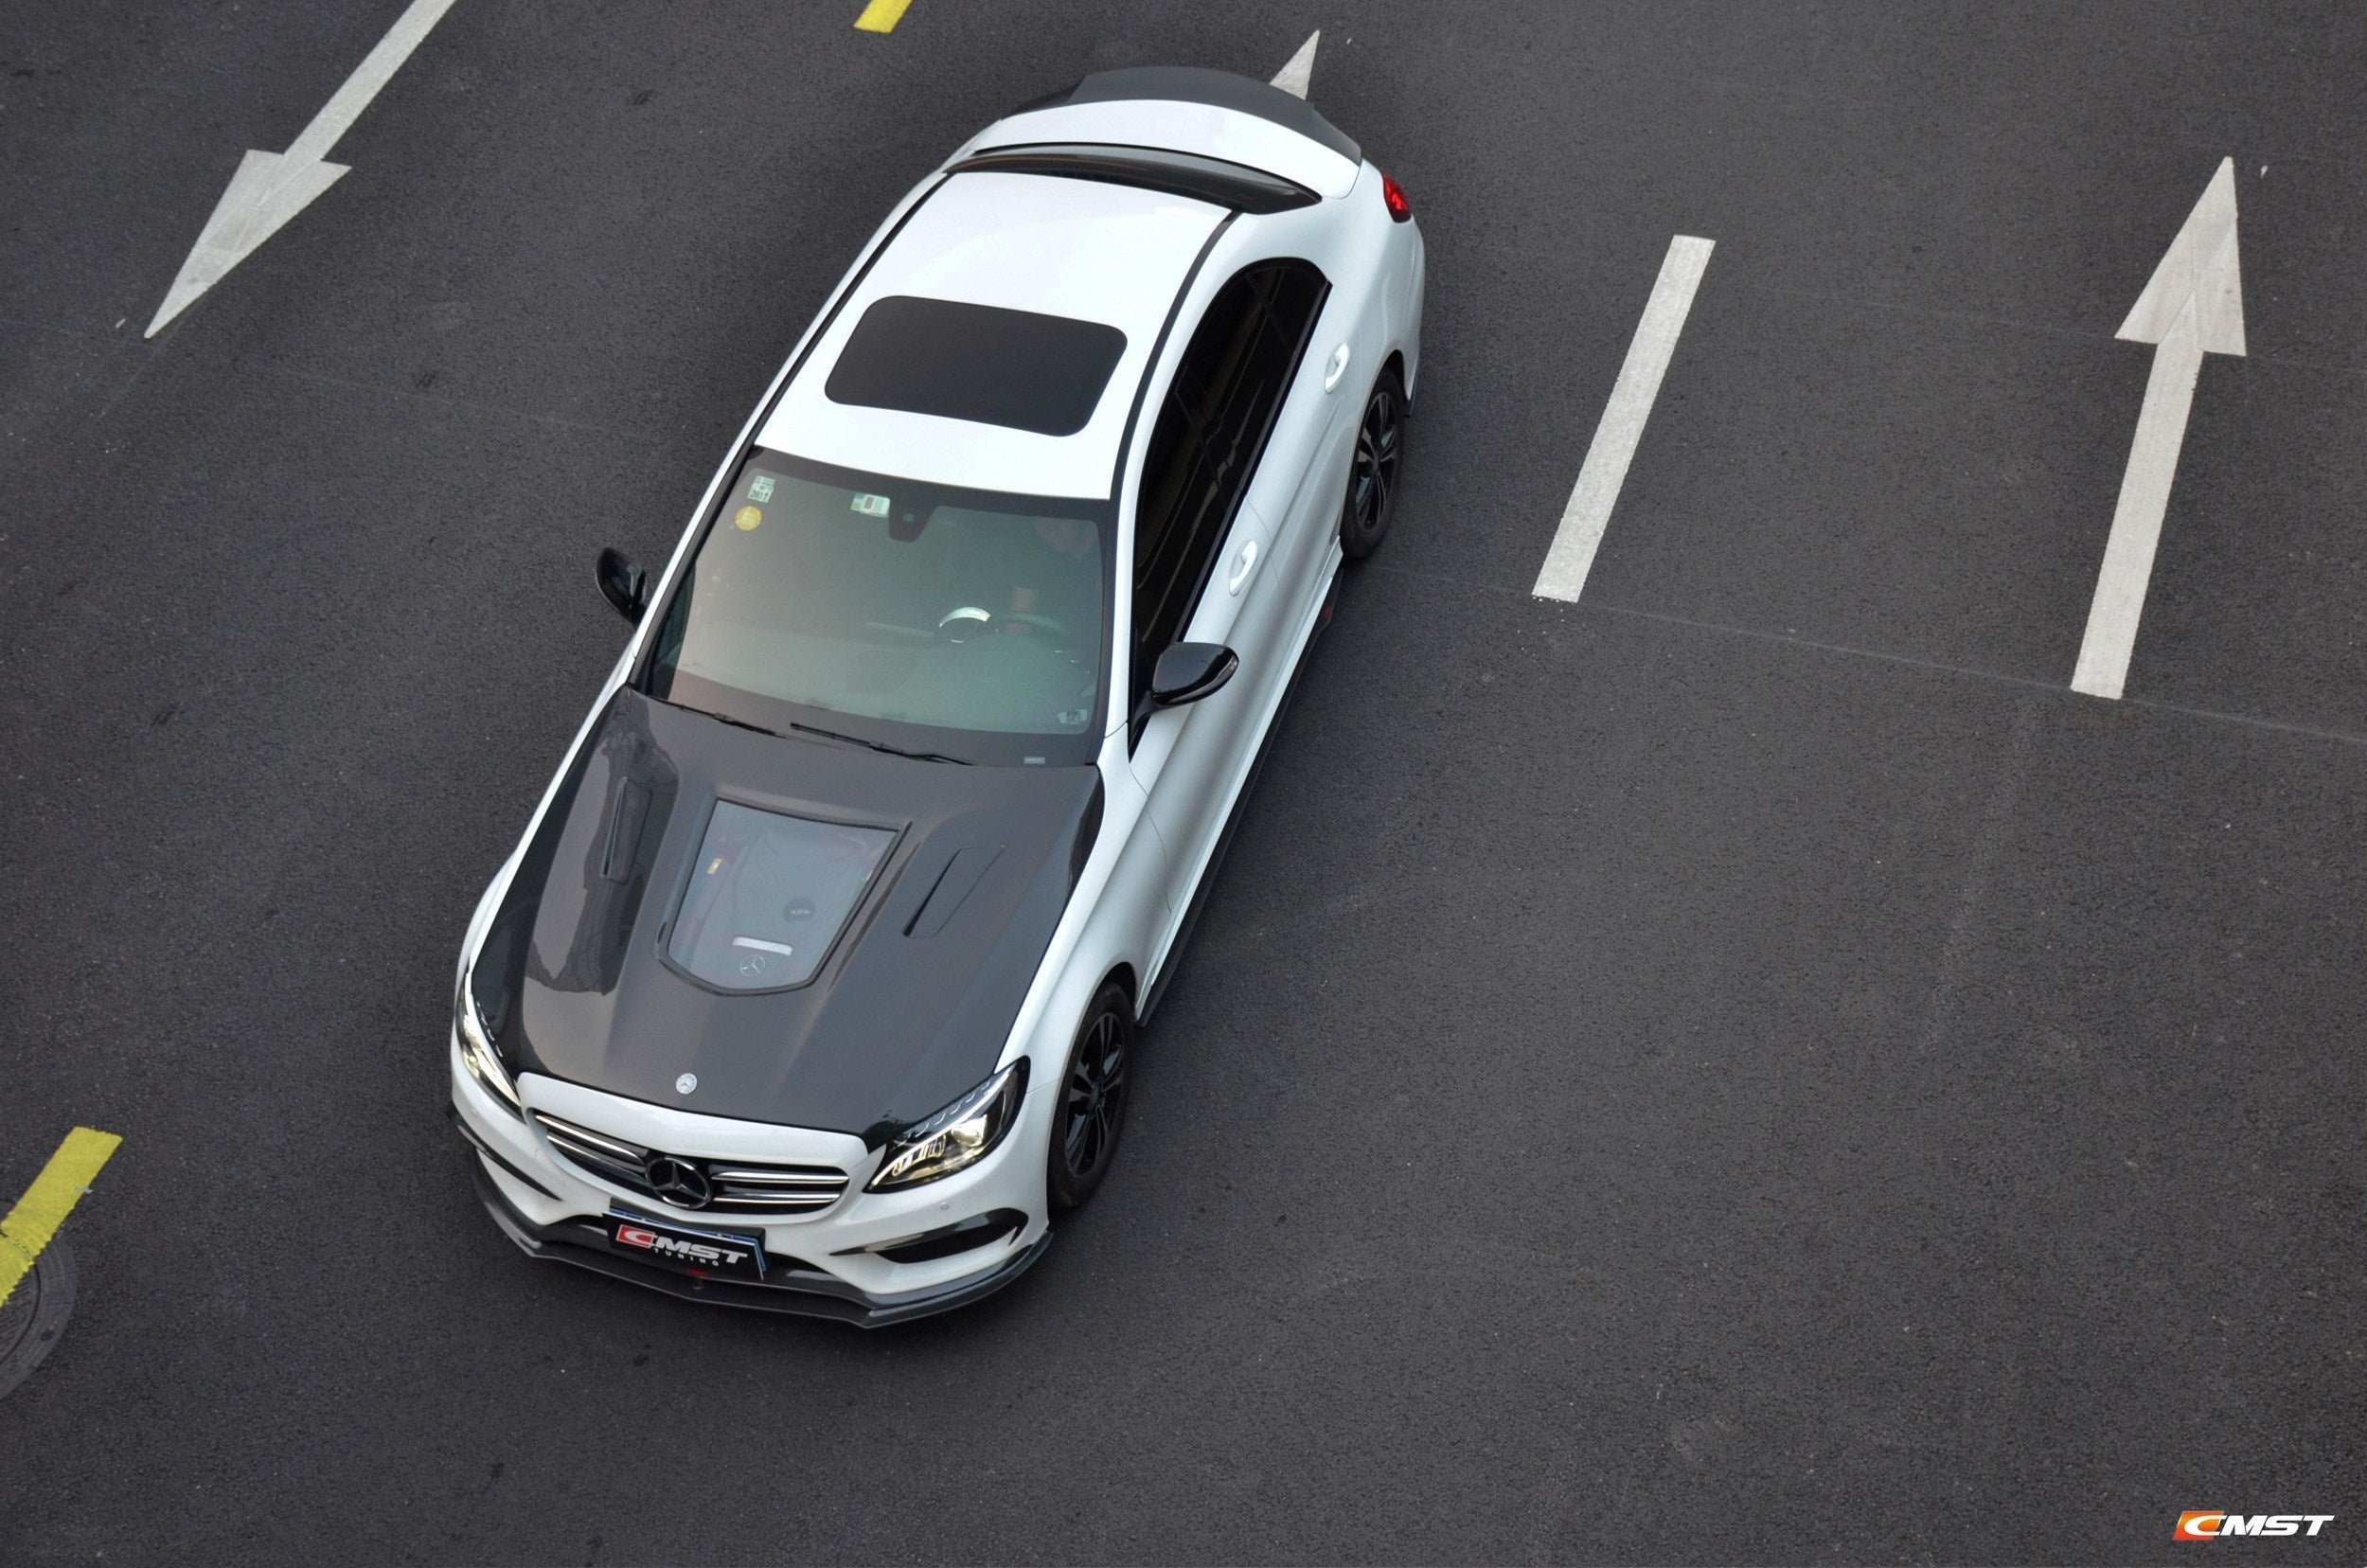 CMST Tuning Carbon Tempered Glass Transparent Hood For Mercedes Benz 2015-2020 W205 C300 C43 Sedan Coupe 2 Door 4 Door Ver.1-5